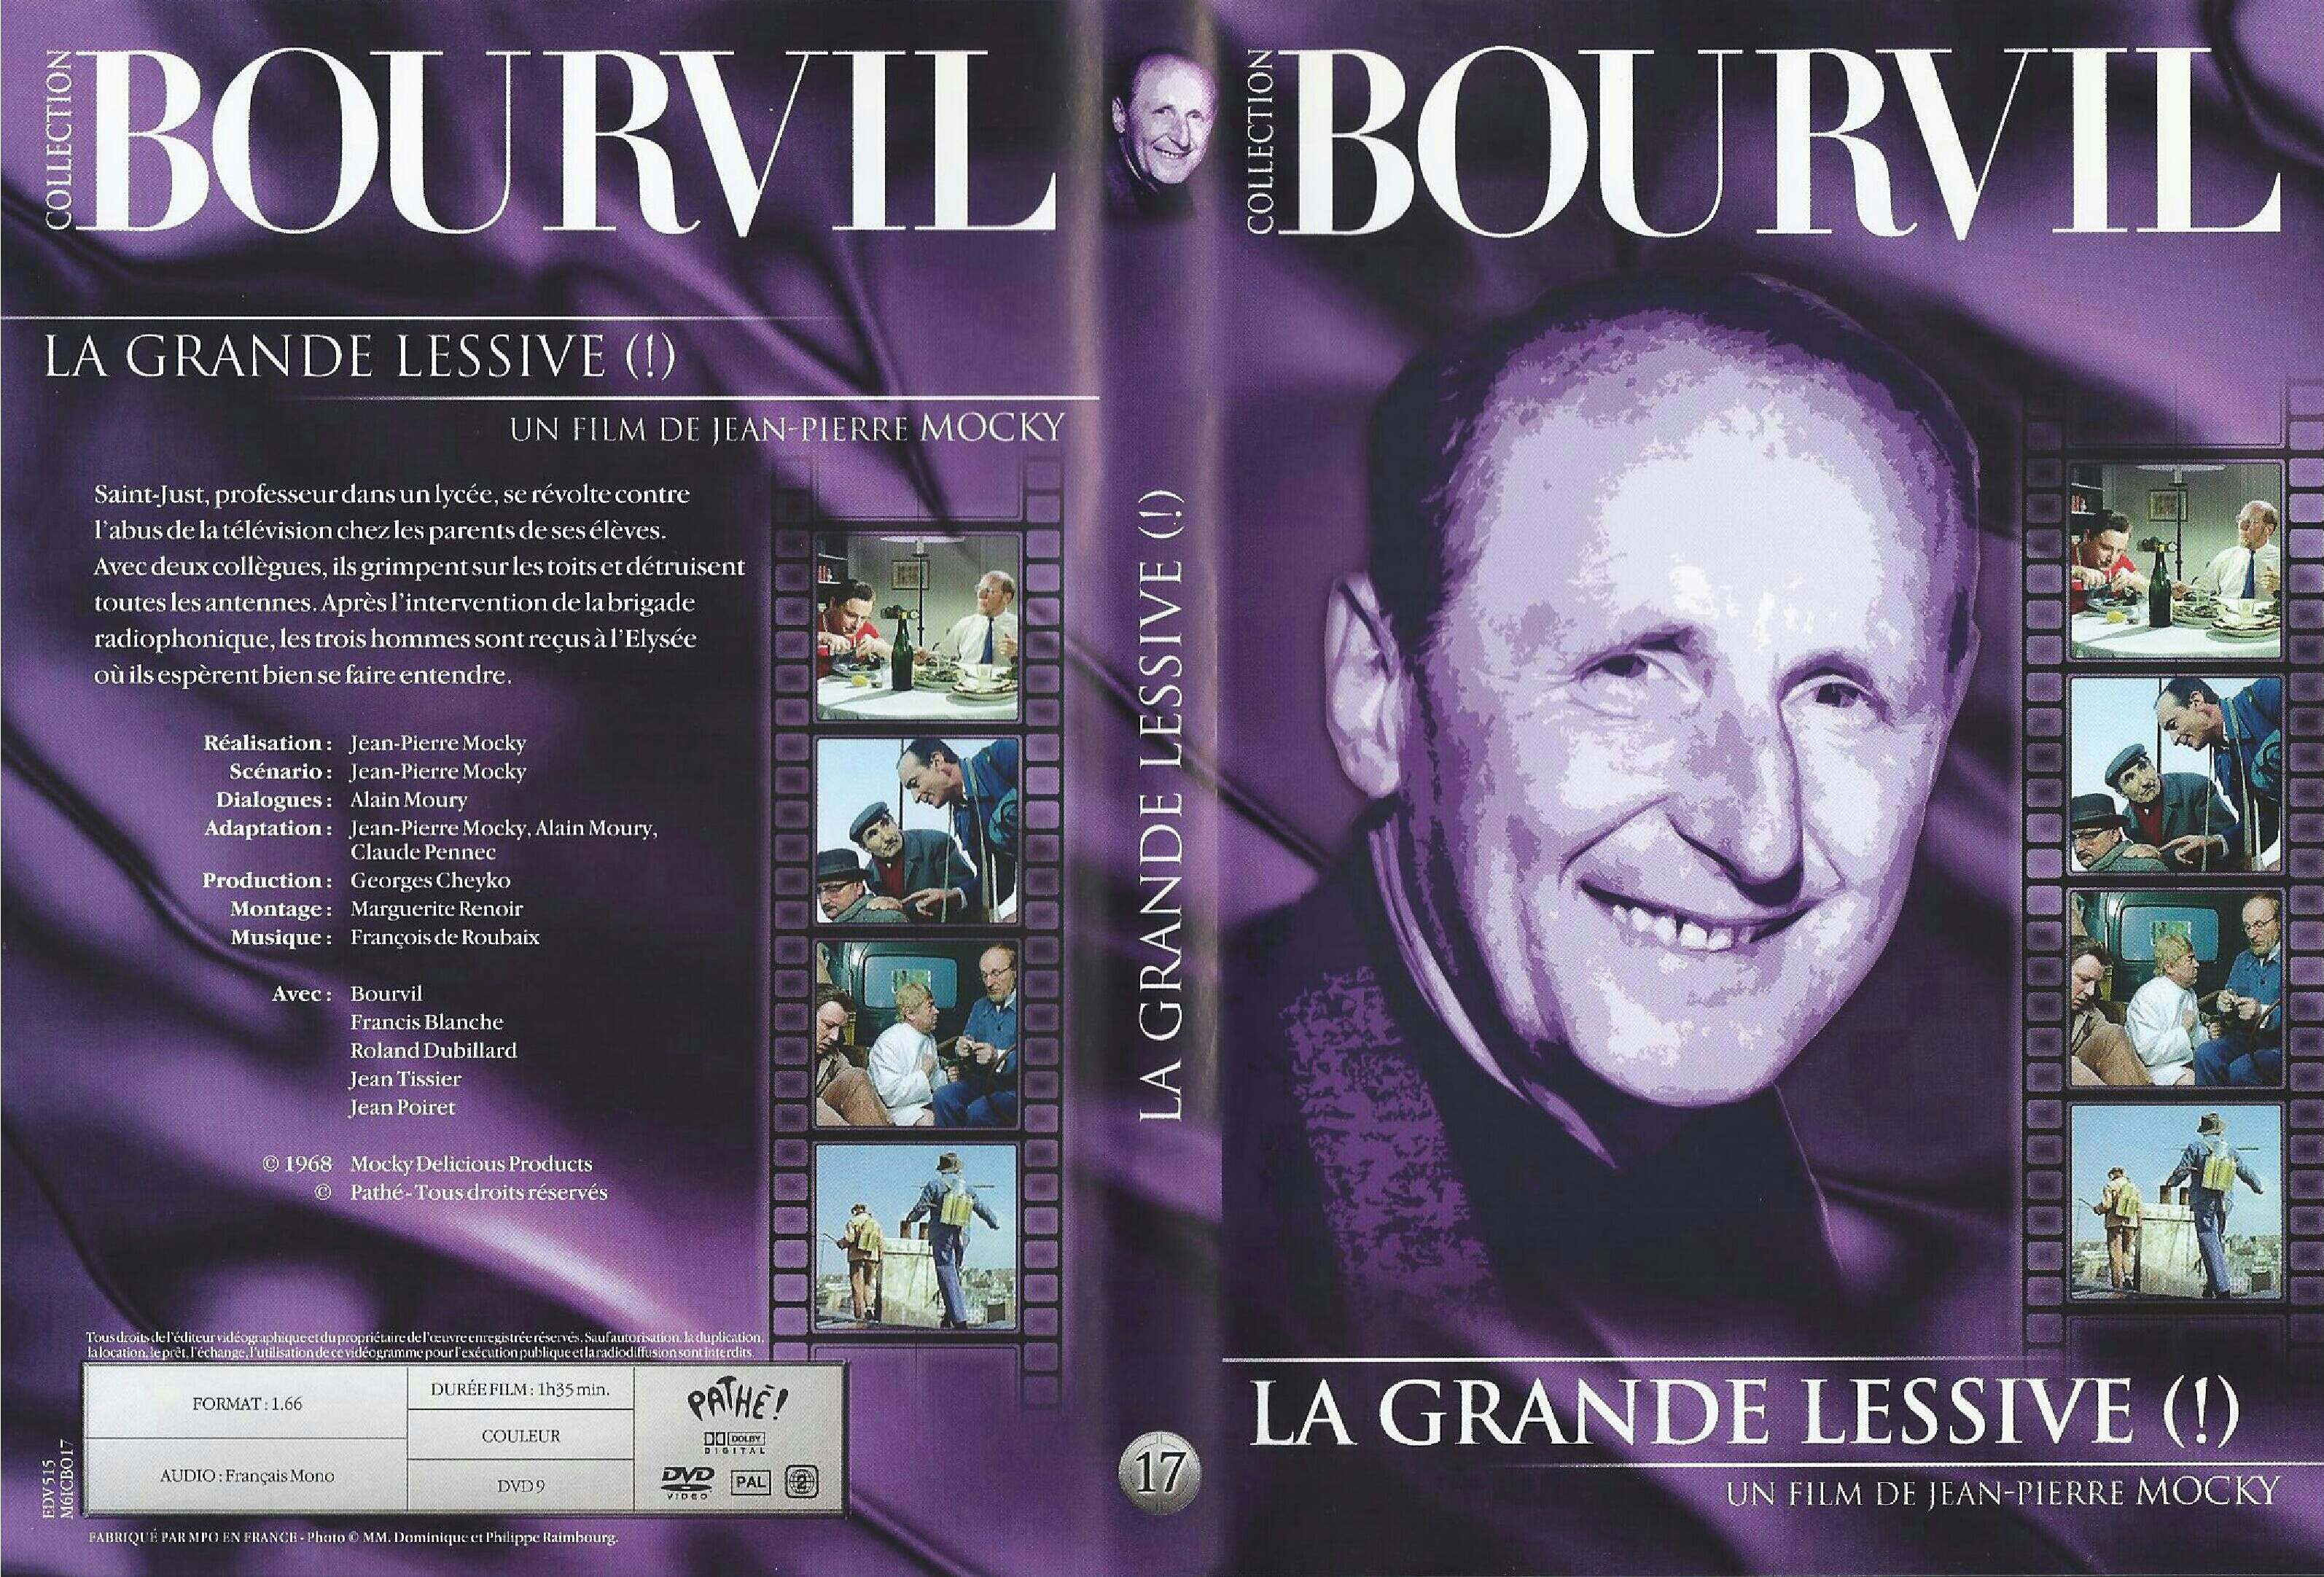 Jaquette DVD La Grande Lessive v2